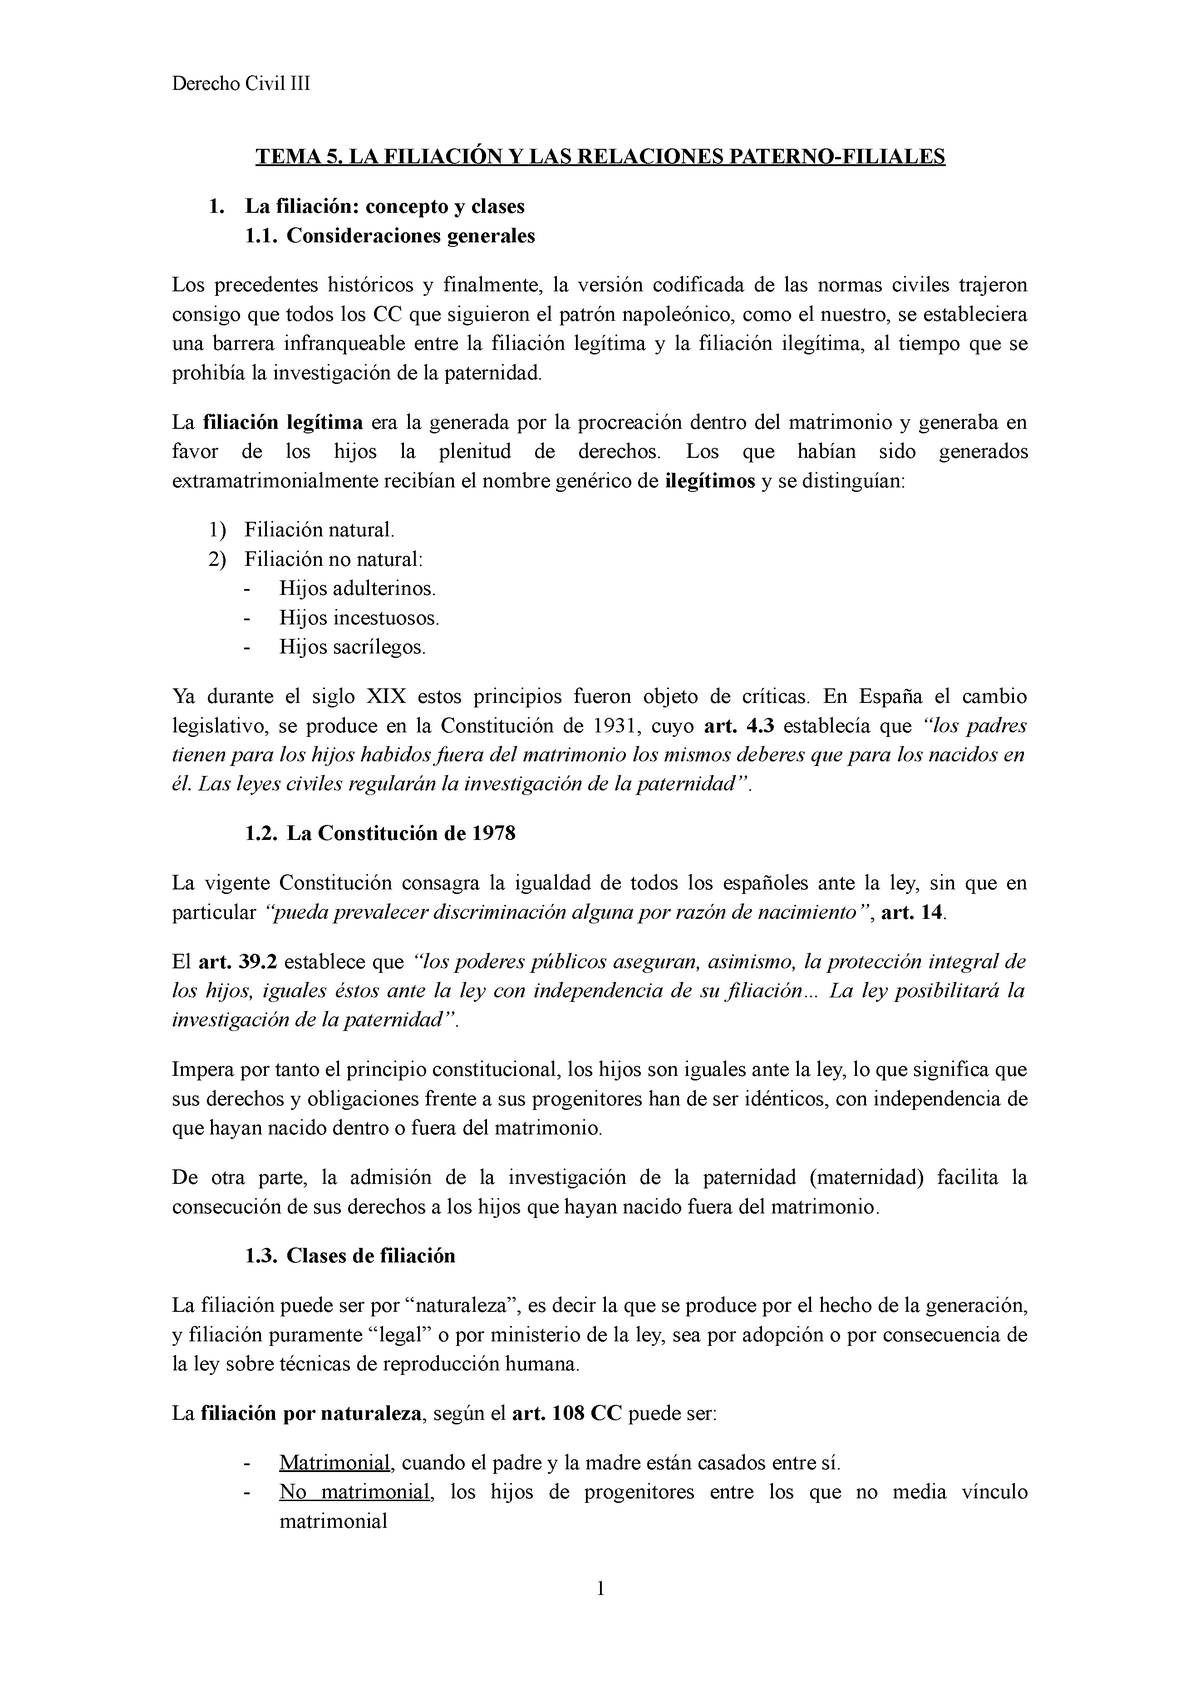 Tema 5 La Filiacion Y Las Re Laciones Paterno Filiales Tema 5 La FiliaciÓn Y Las Relaciones 2764